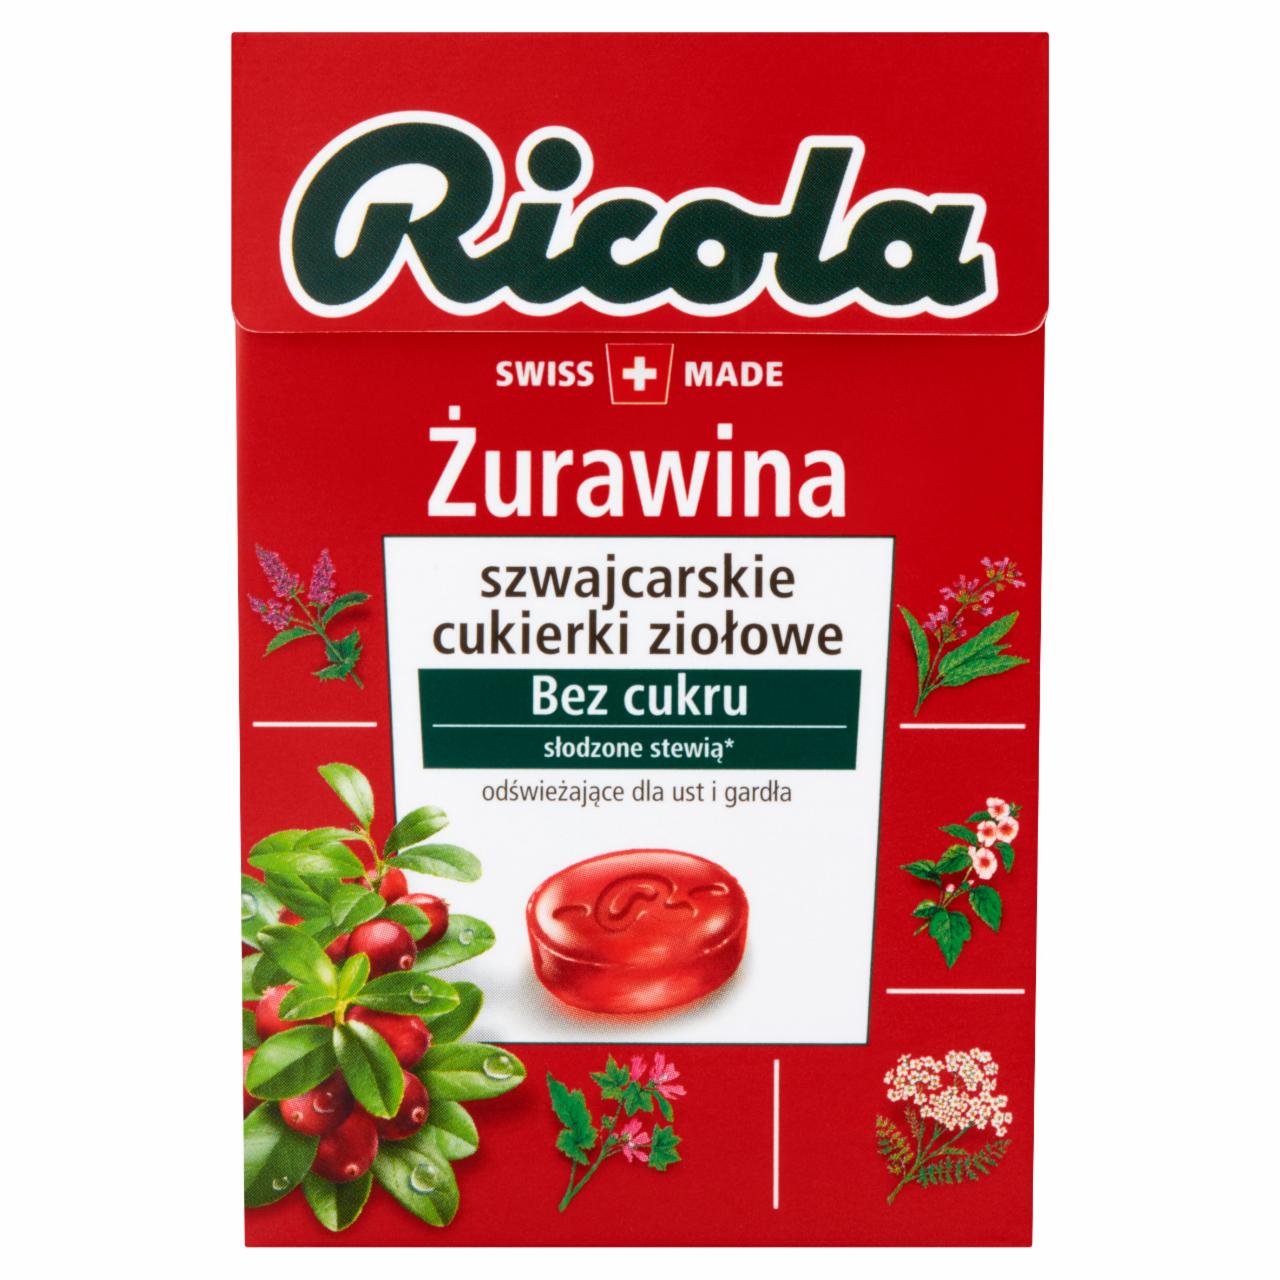 Zdjęcia - Ricola Żurawina szwajcarskie cukierki ziołowe 40 g